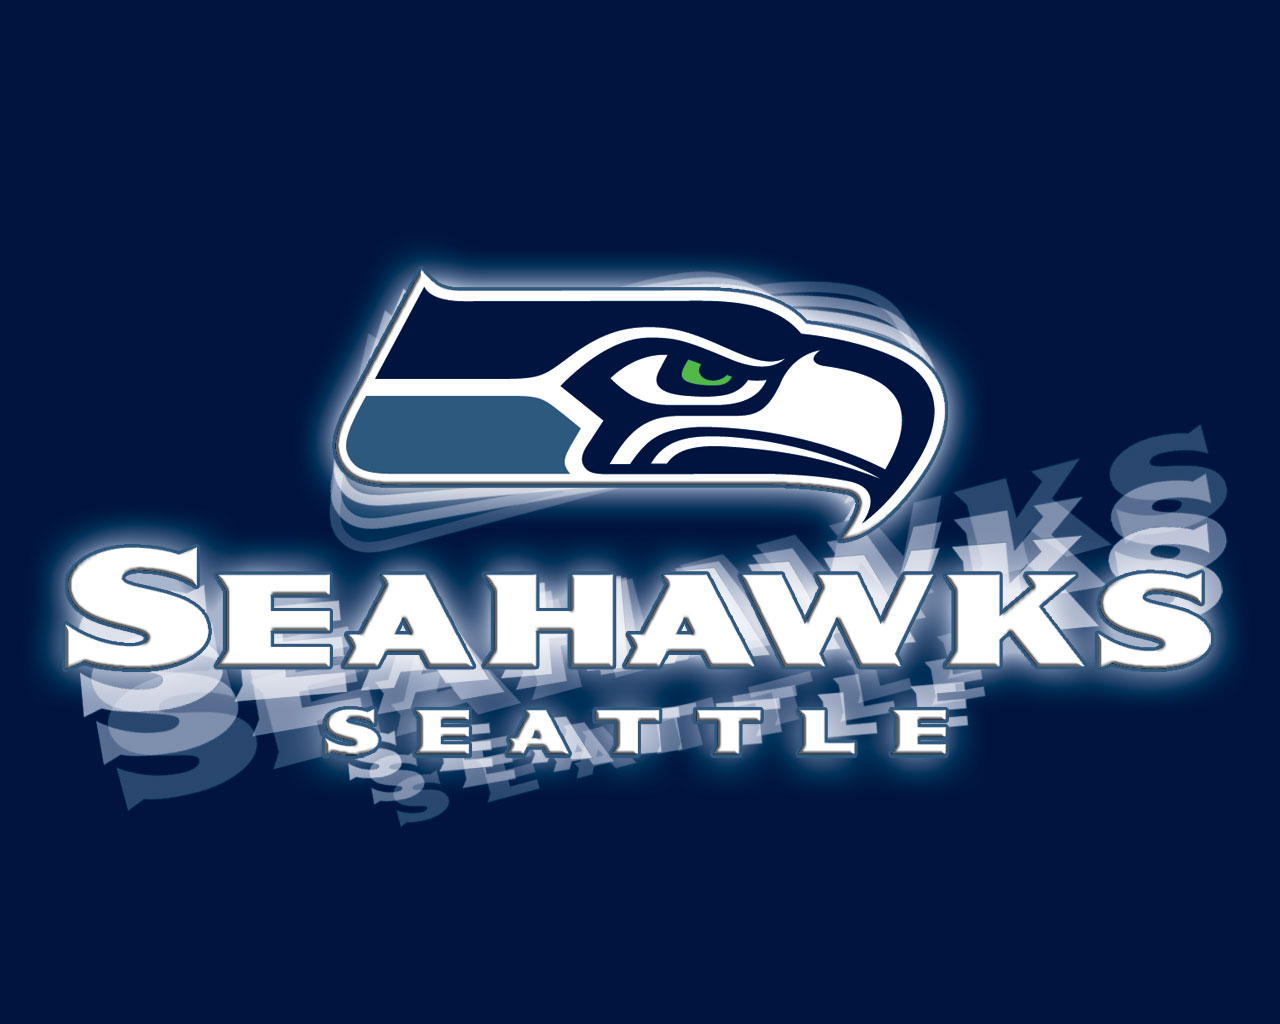  Seattle Seahawks Wallpaper 1280x1024 Full HD Wallpapers 1280x1024